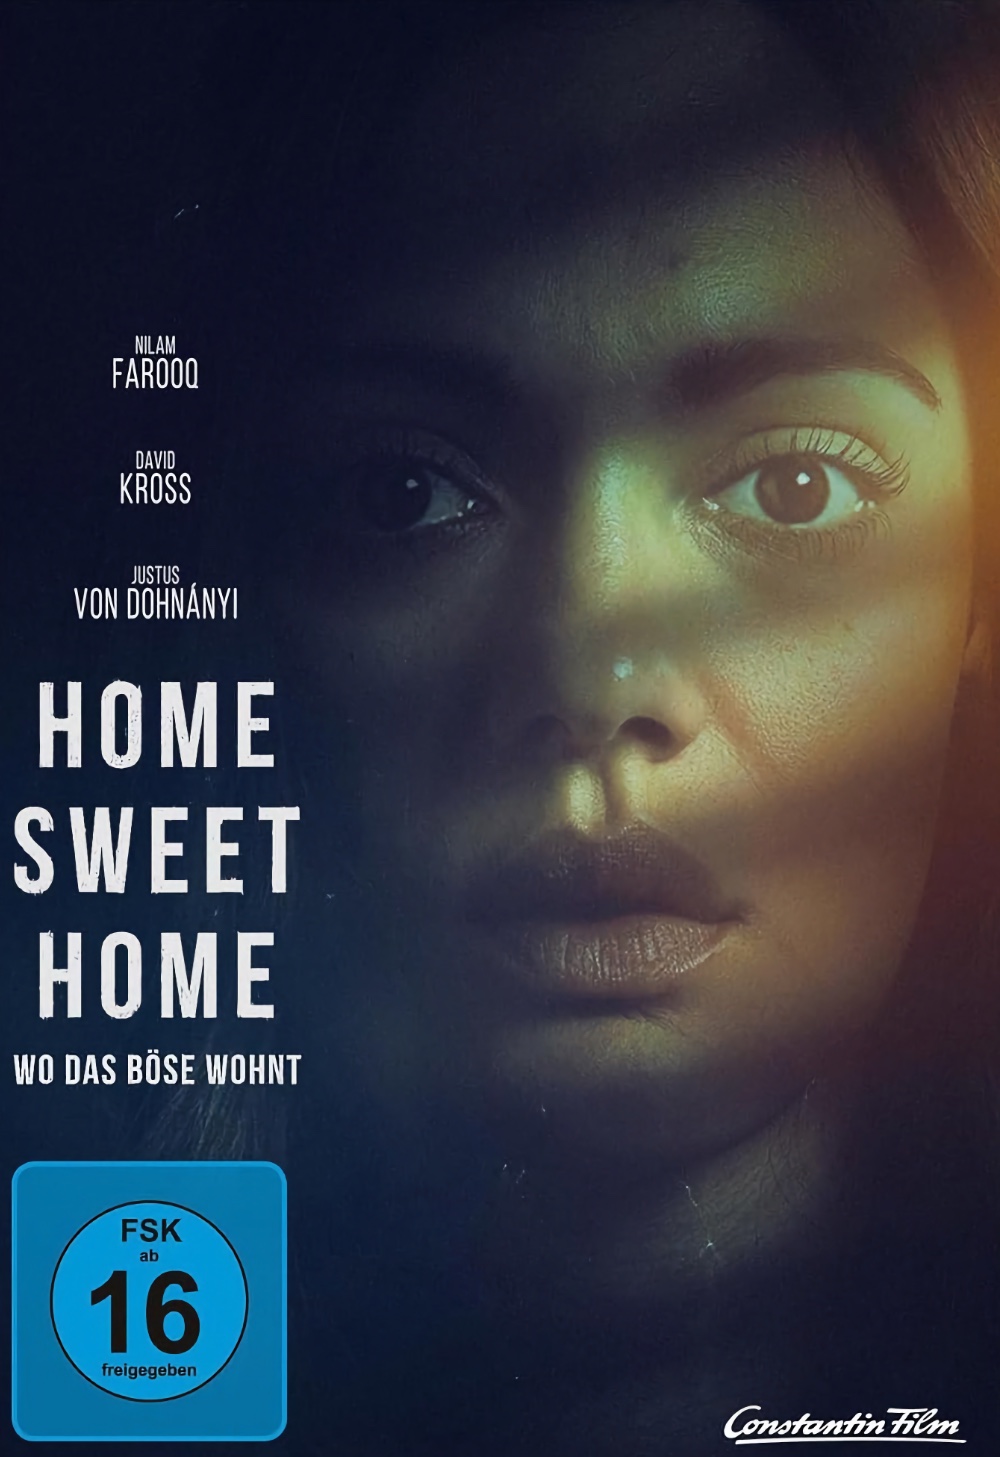 Home Sweet Home – Wo das Böse wohnt